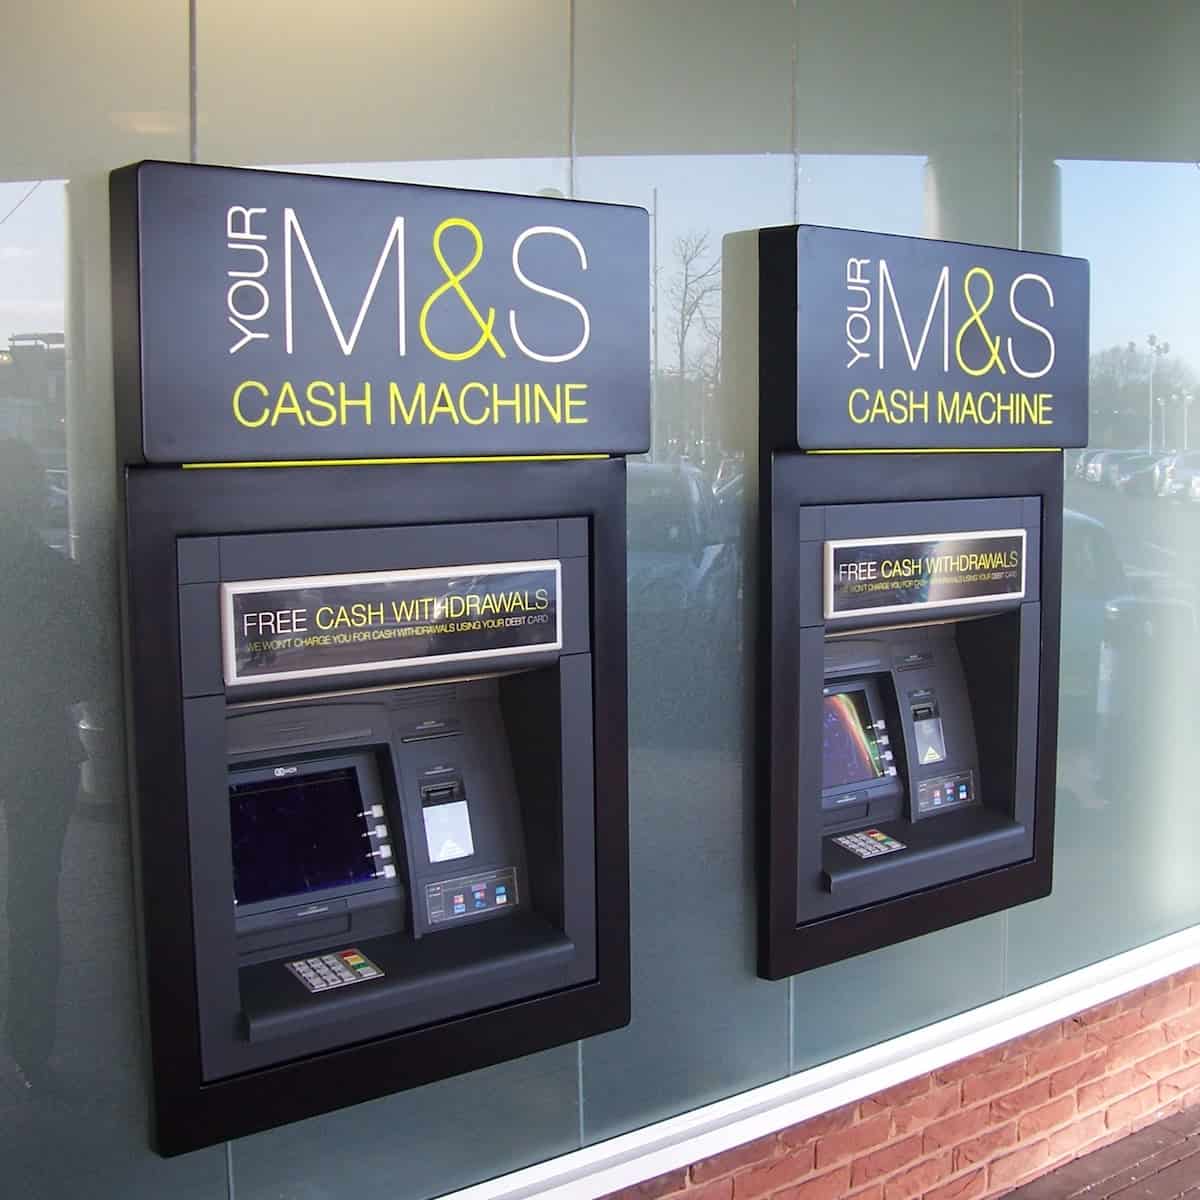 Bespoke ATM Signage